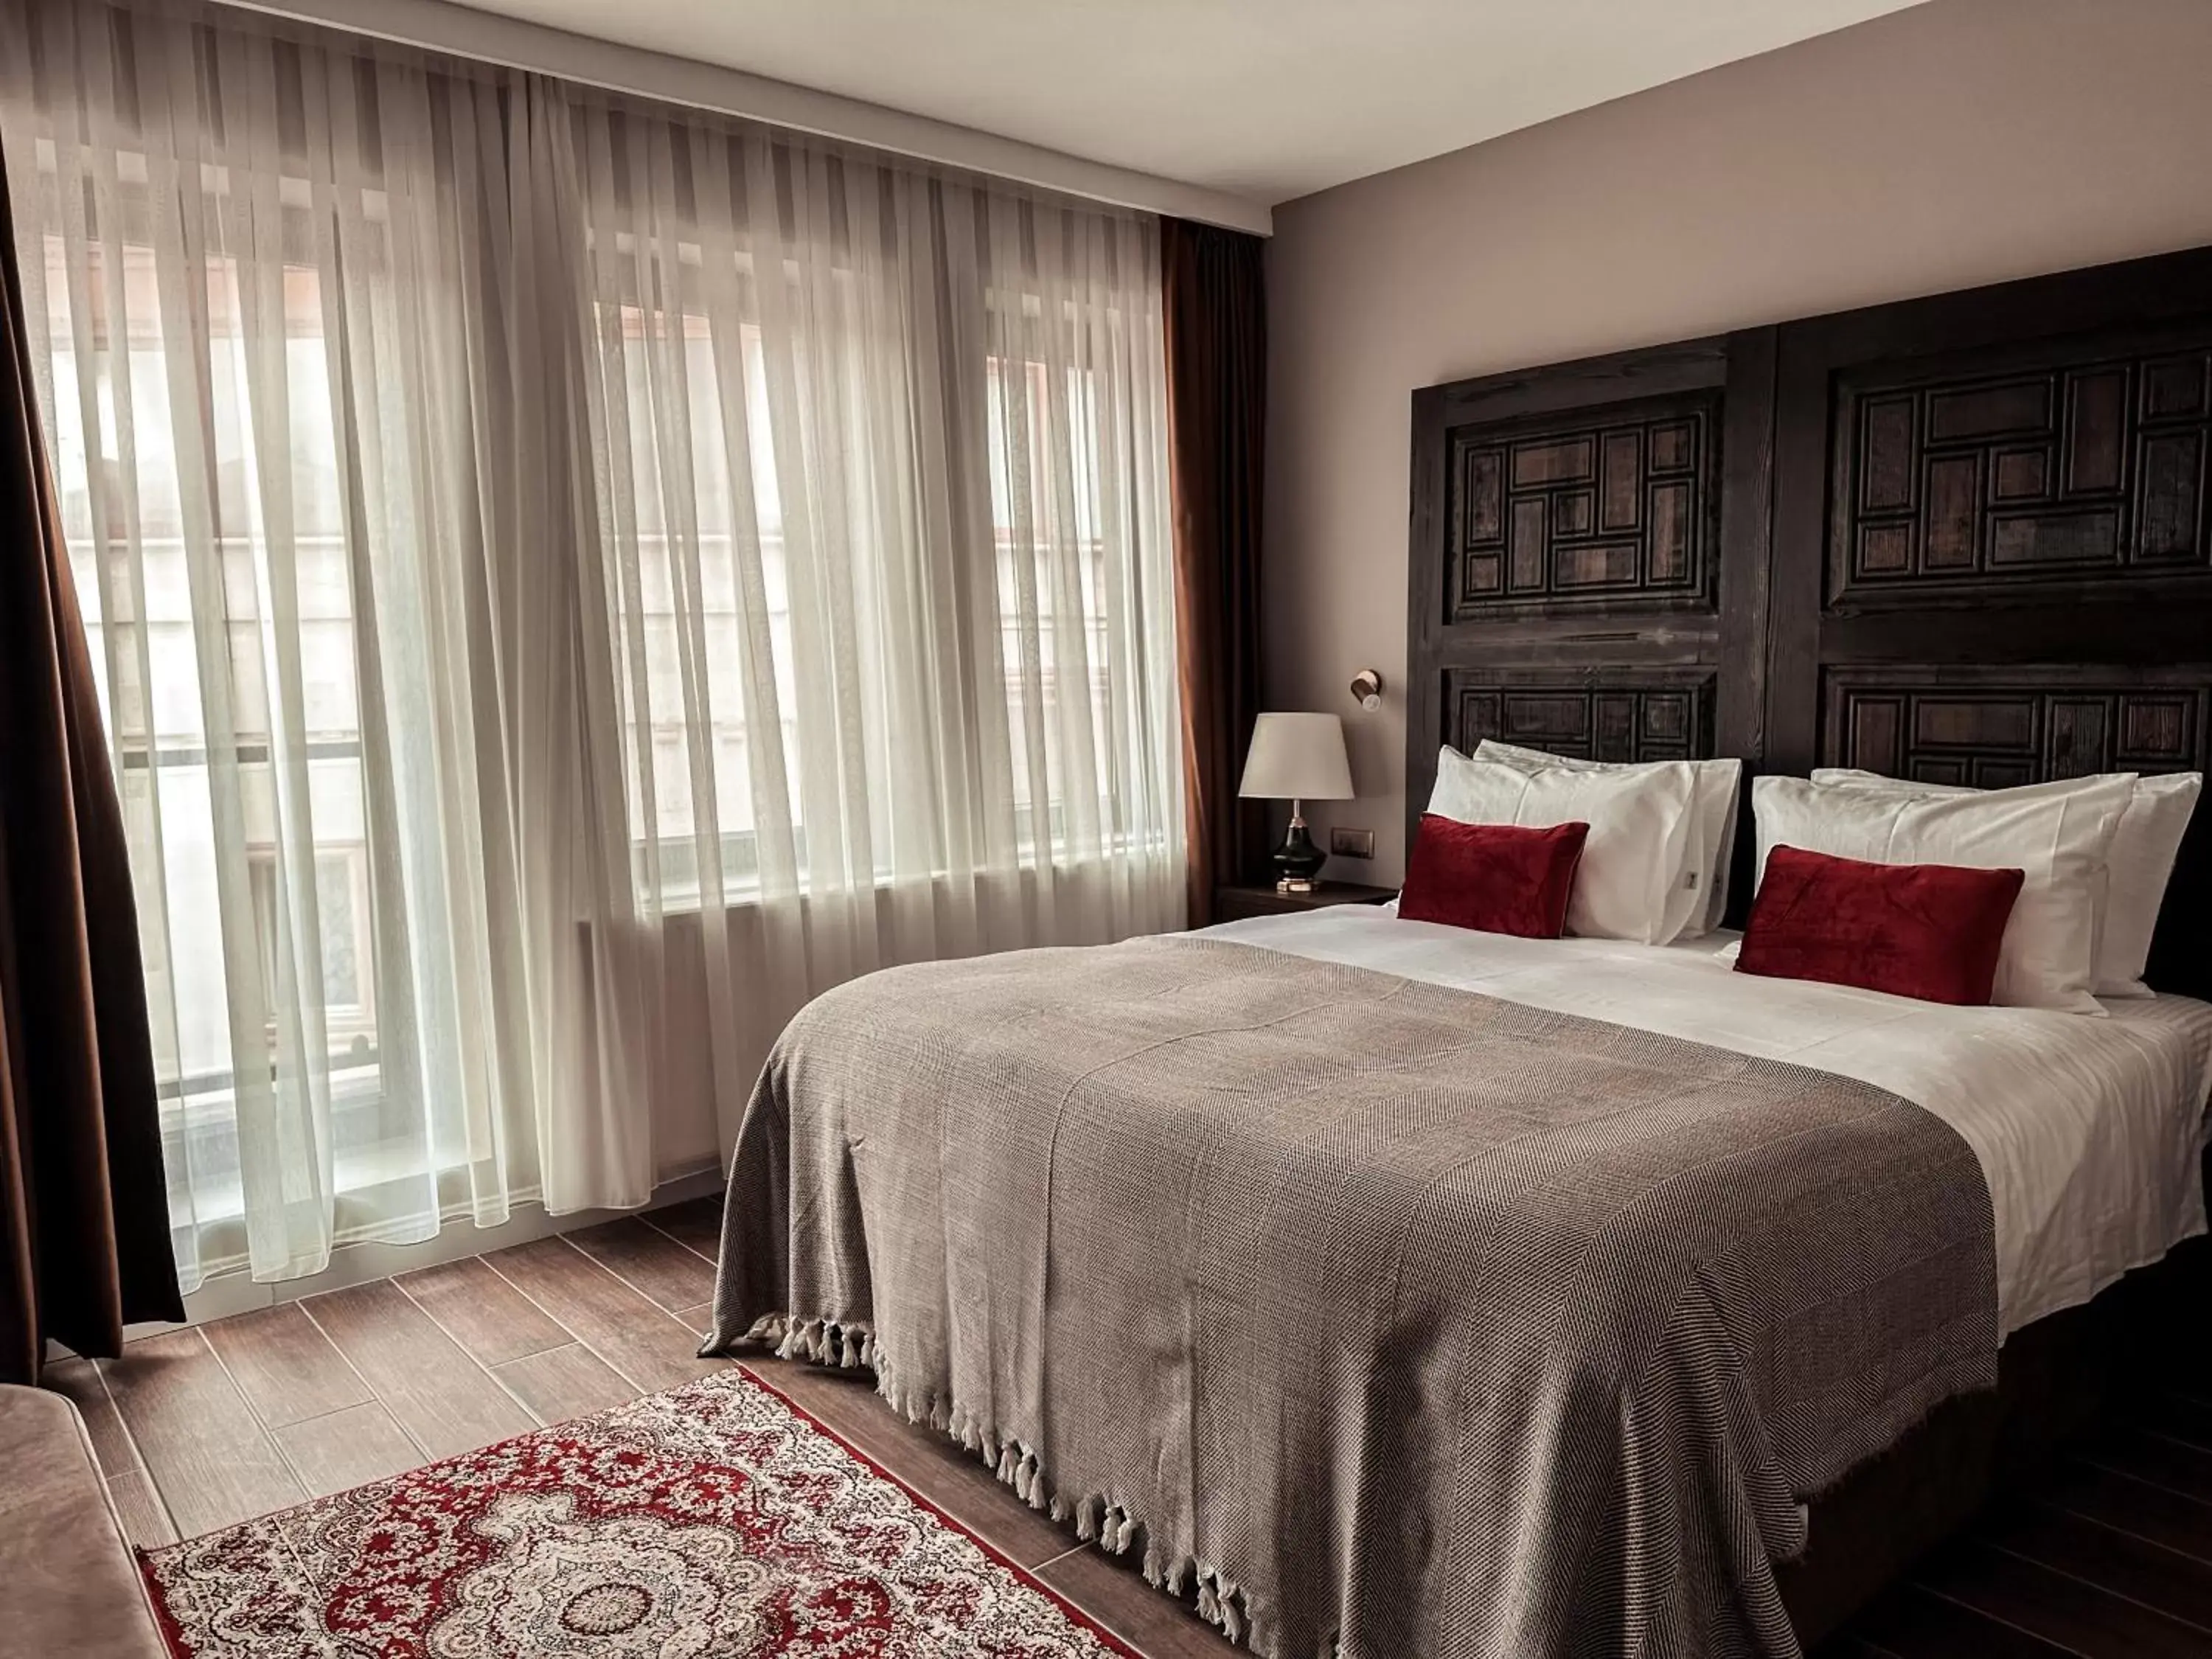 Queen Room in Osmanli Cappadocia Hotel